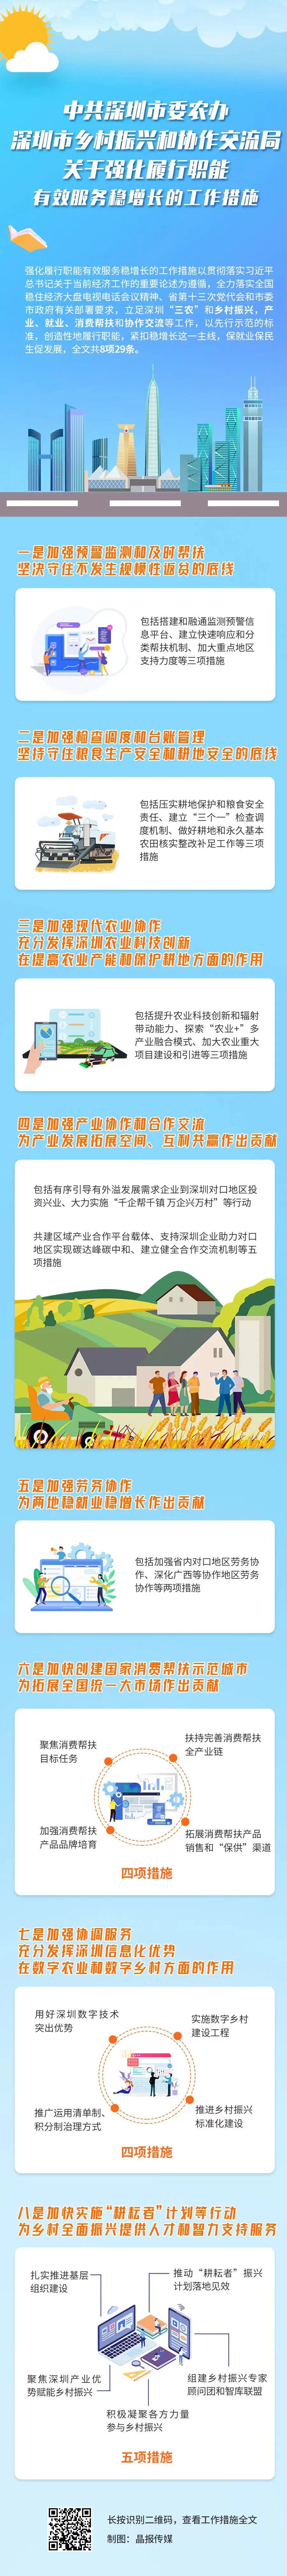 立足“三农”和乡村振兴，深圳推出29条措施服务稳增长